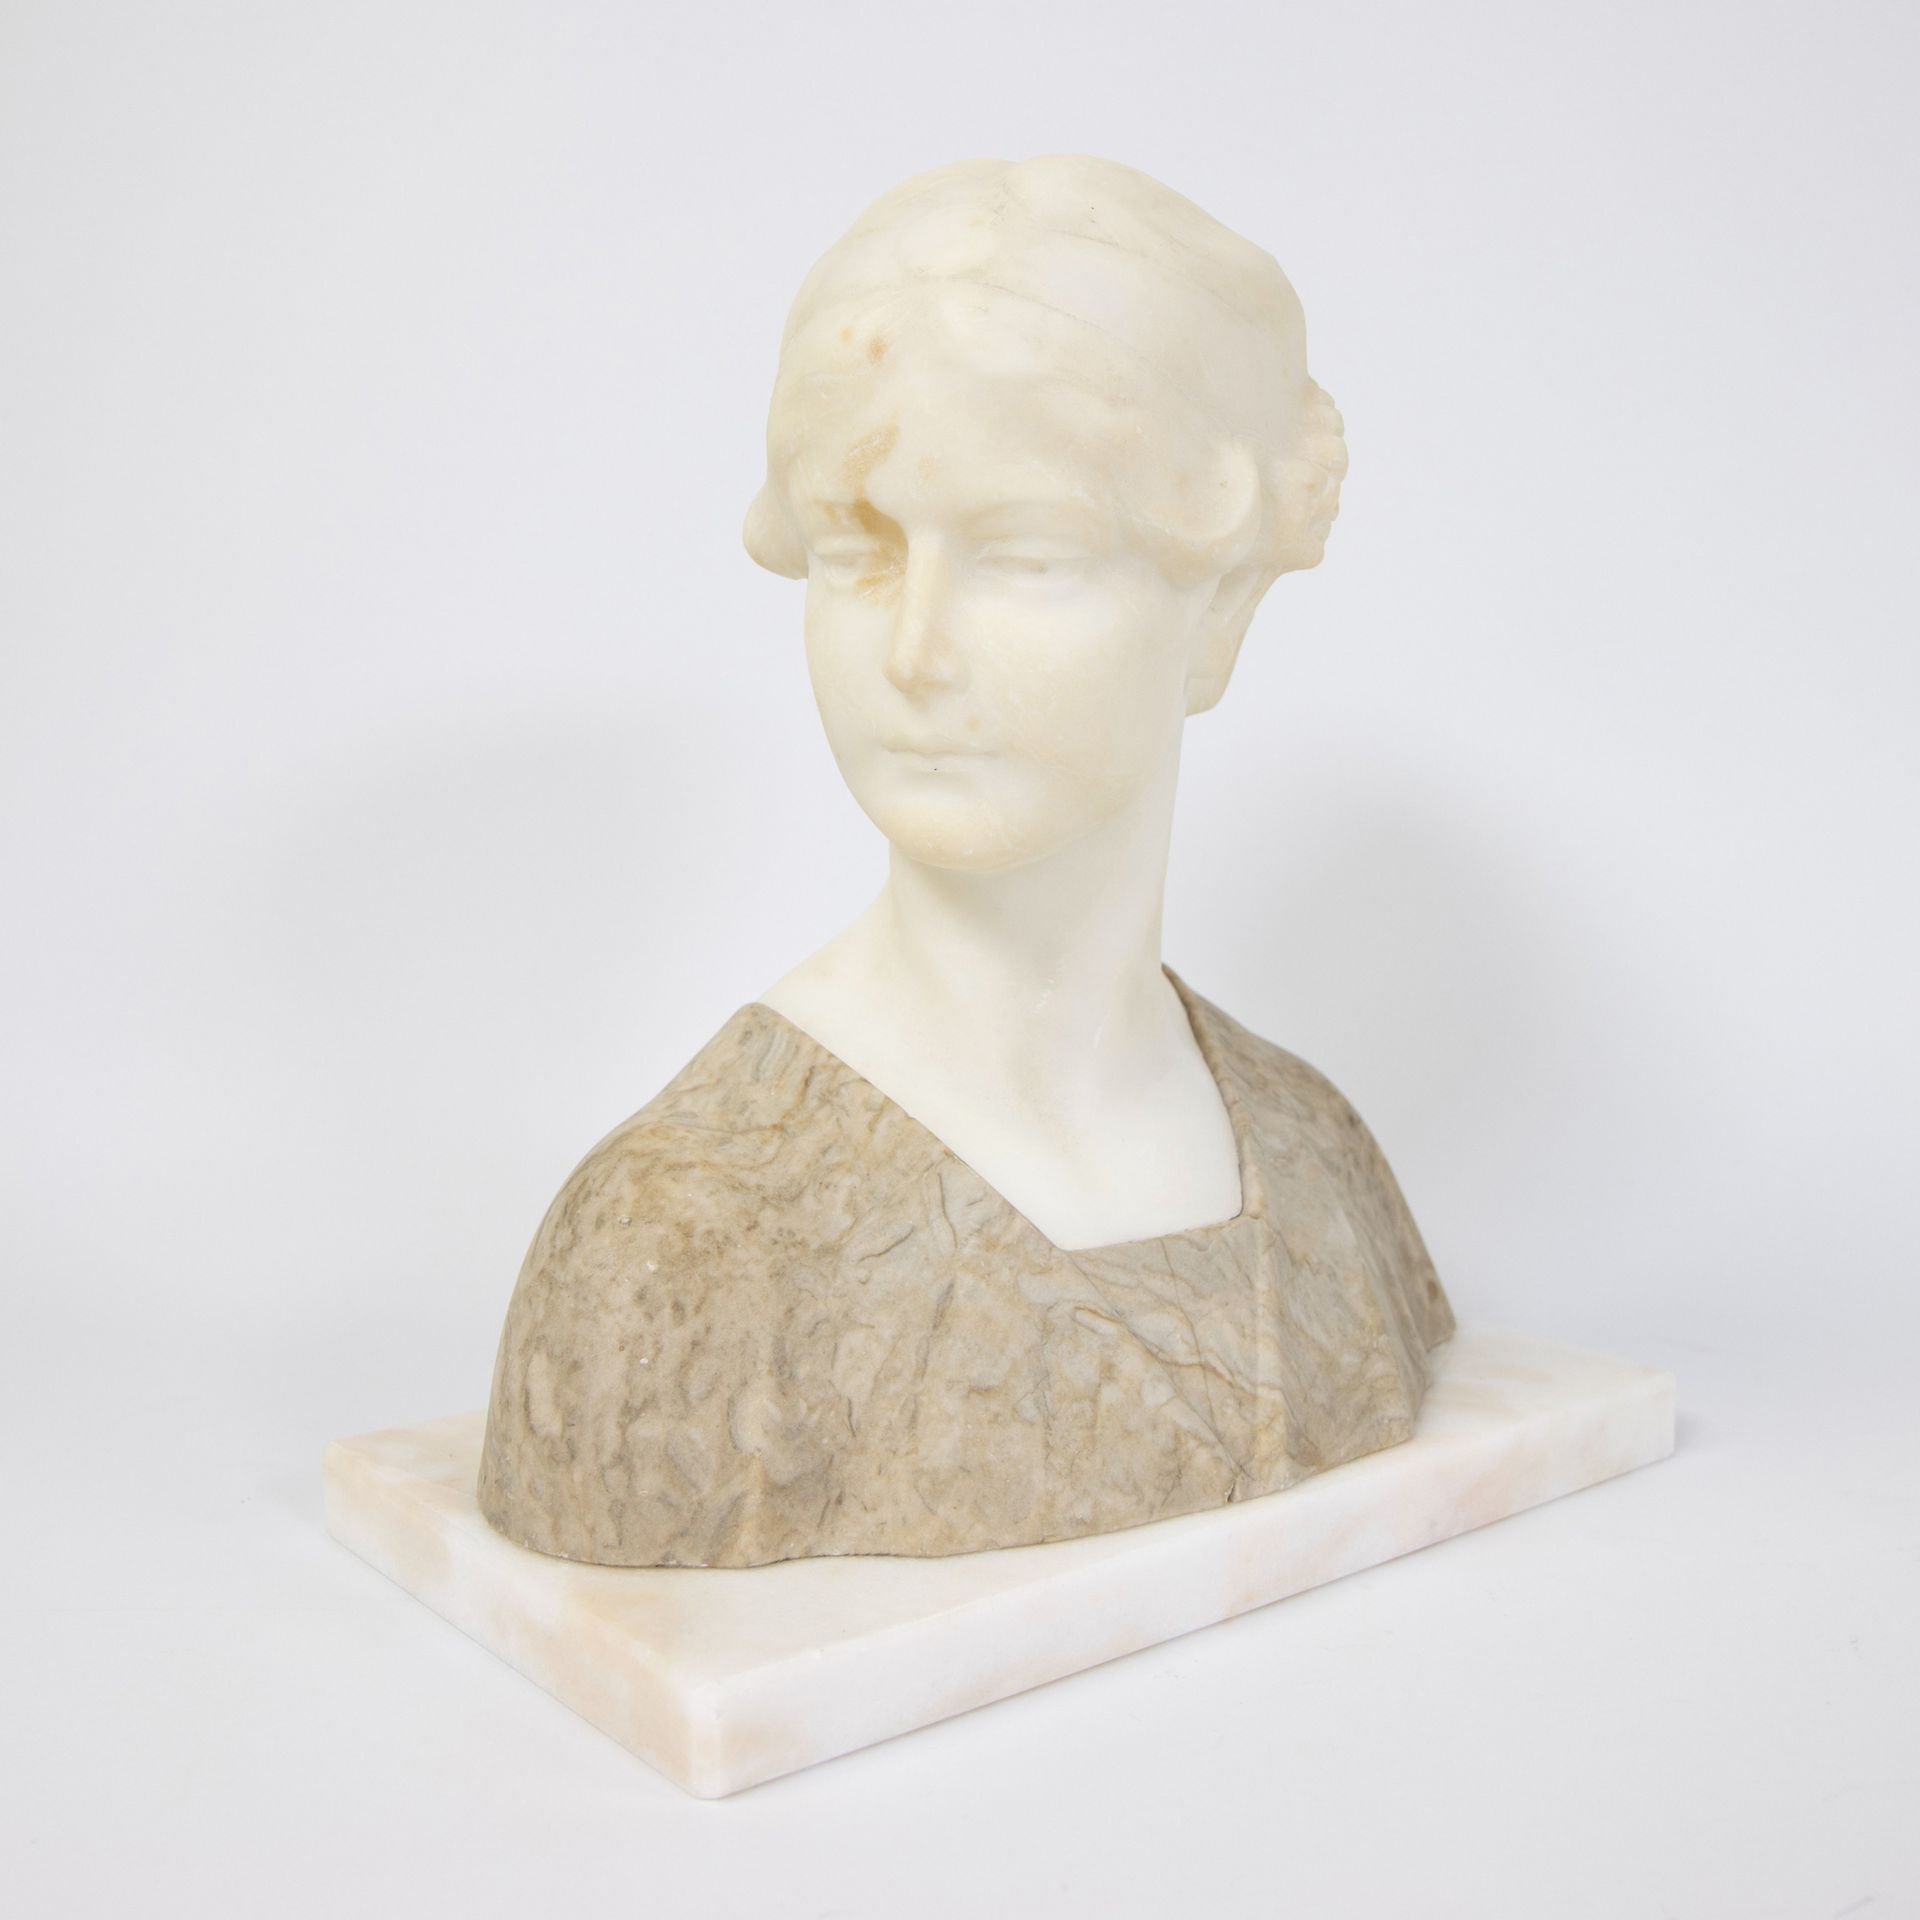 Null Buste de femme en albâtre ca 1900
Damesbuste in albast ca 1900
H 27 cm